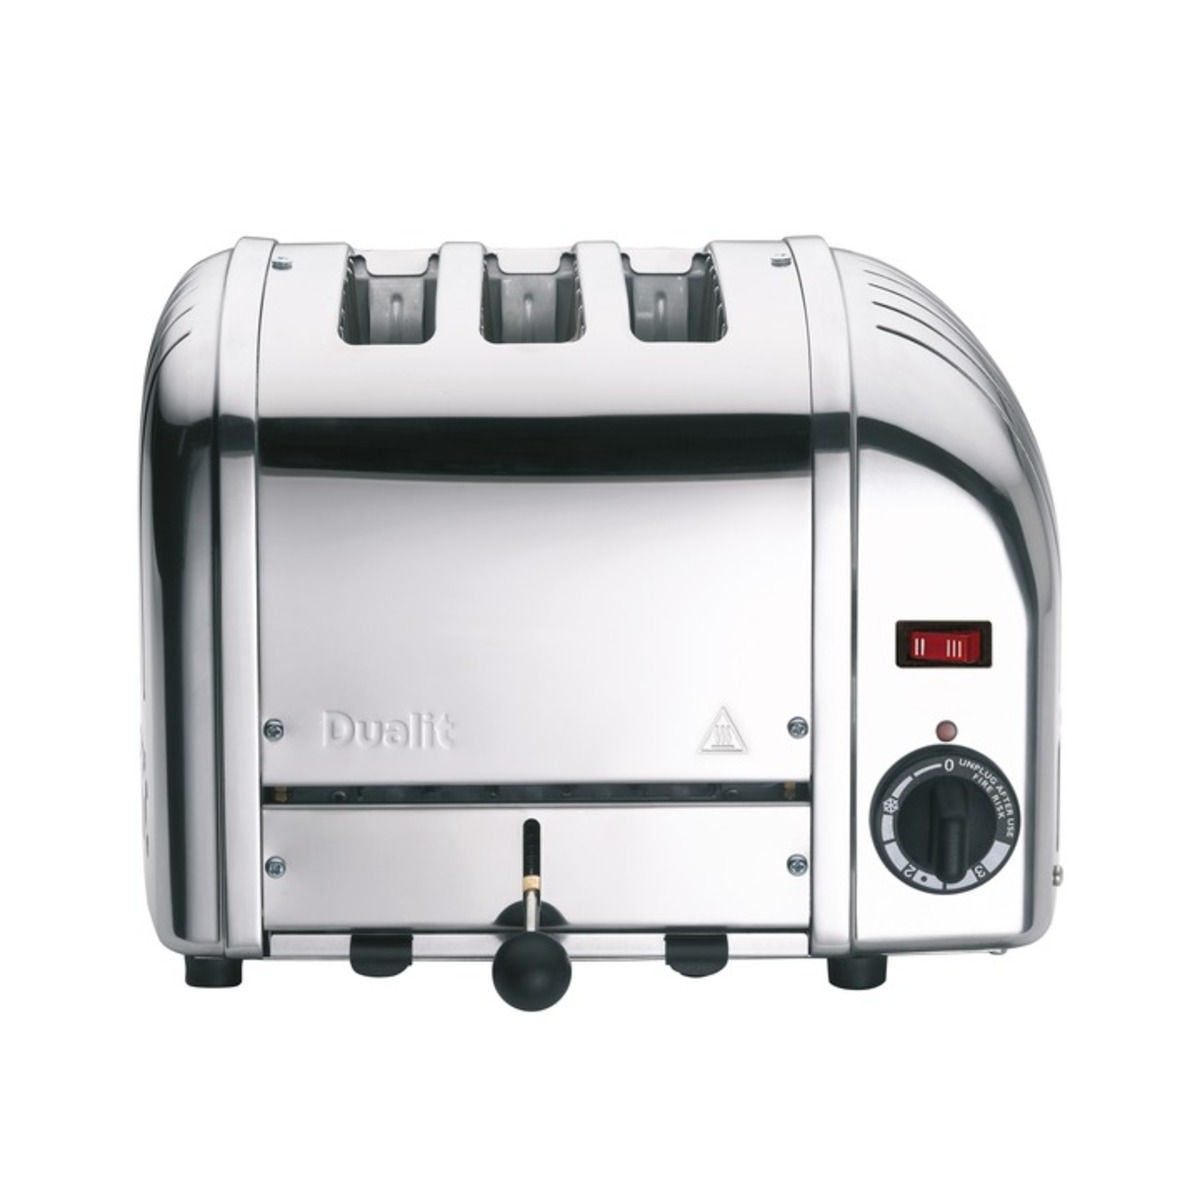 Dualit 30084 3 Slot Vario Toaster, Polished